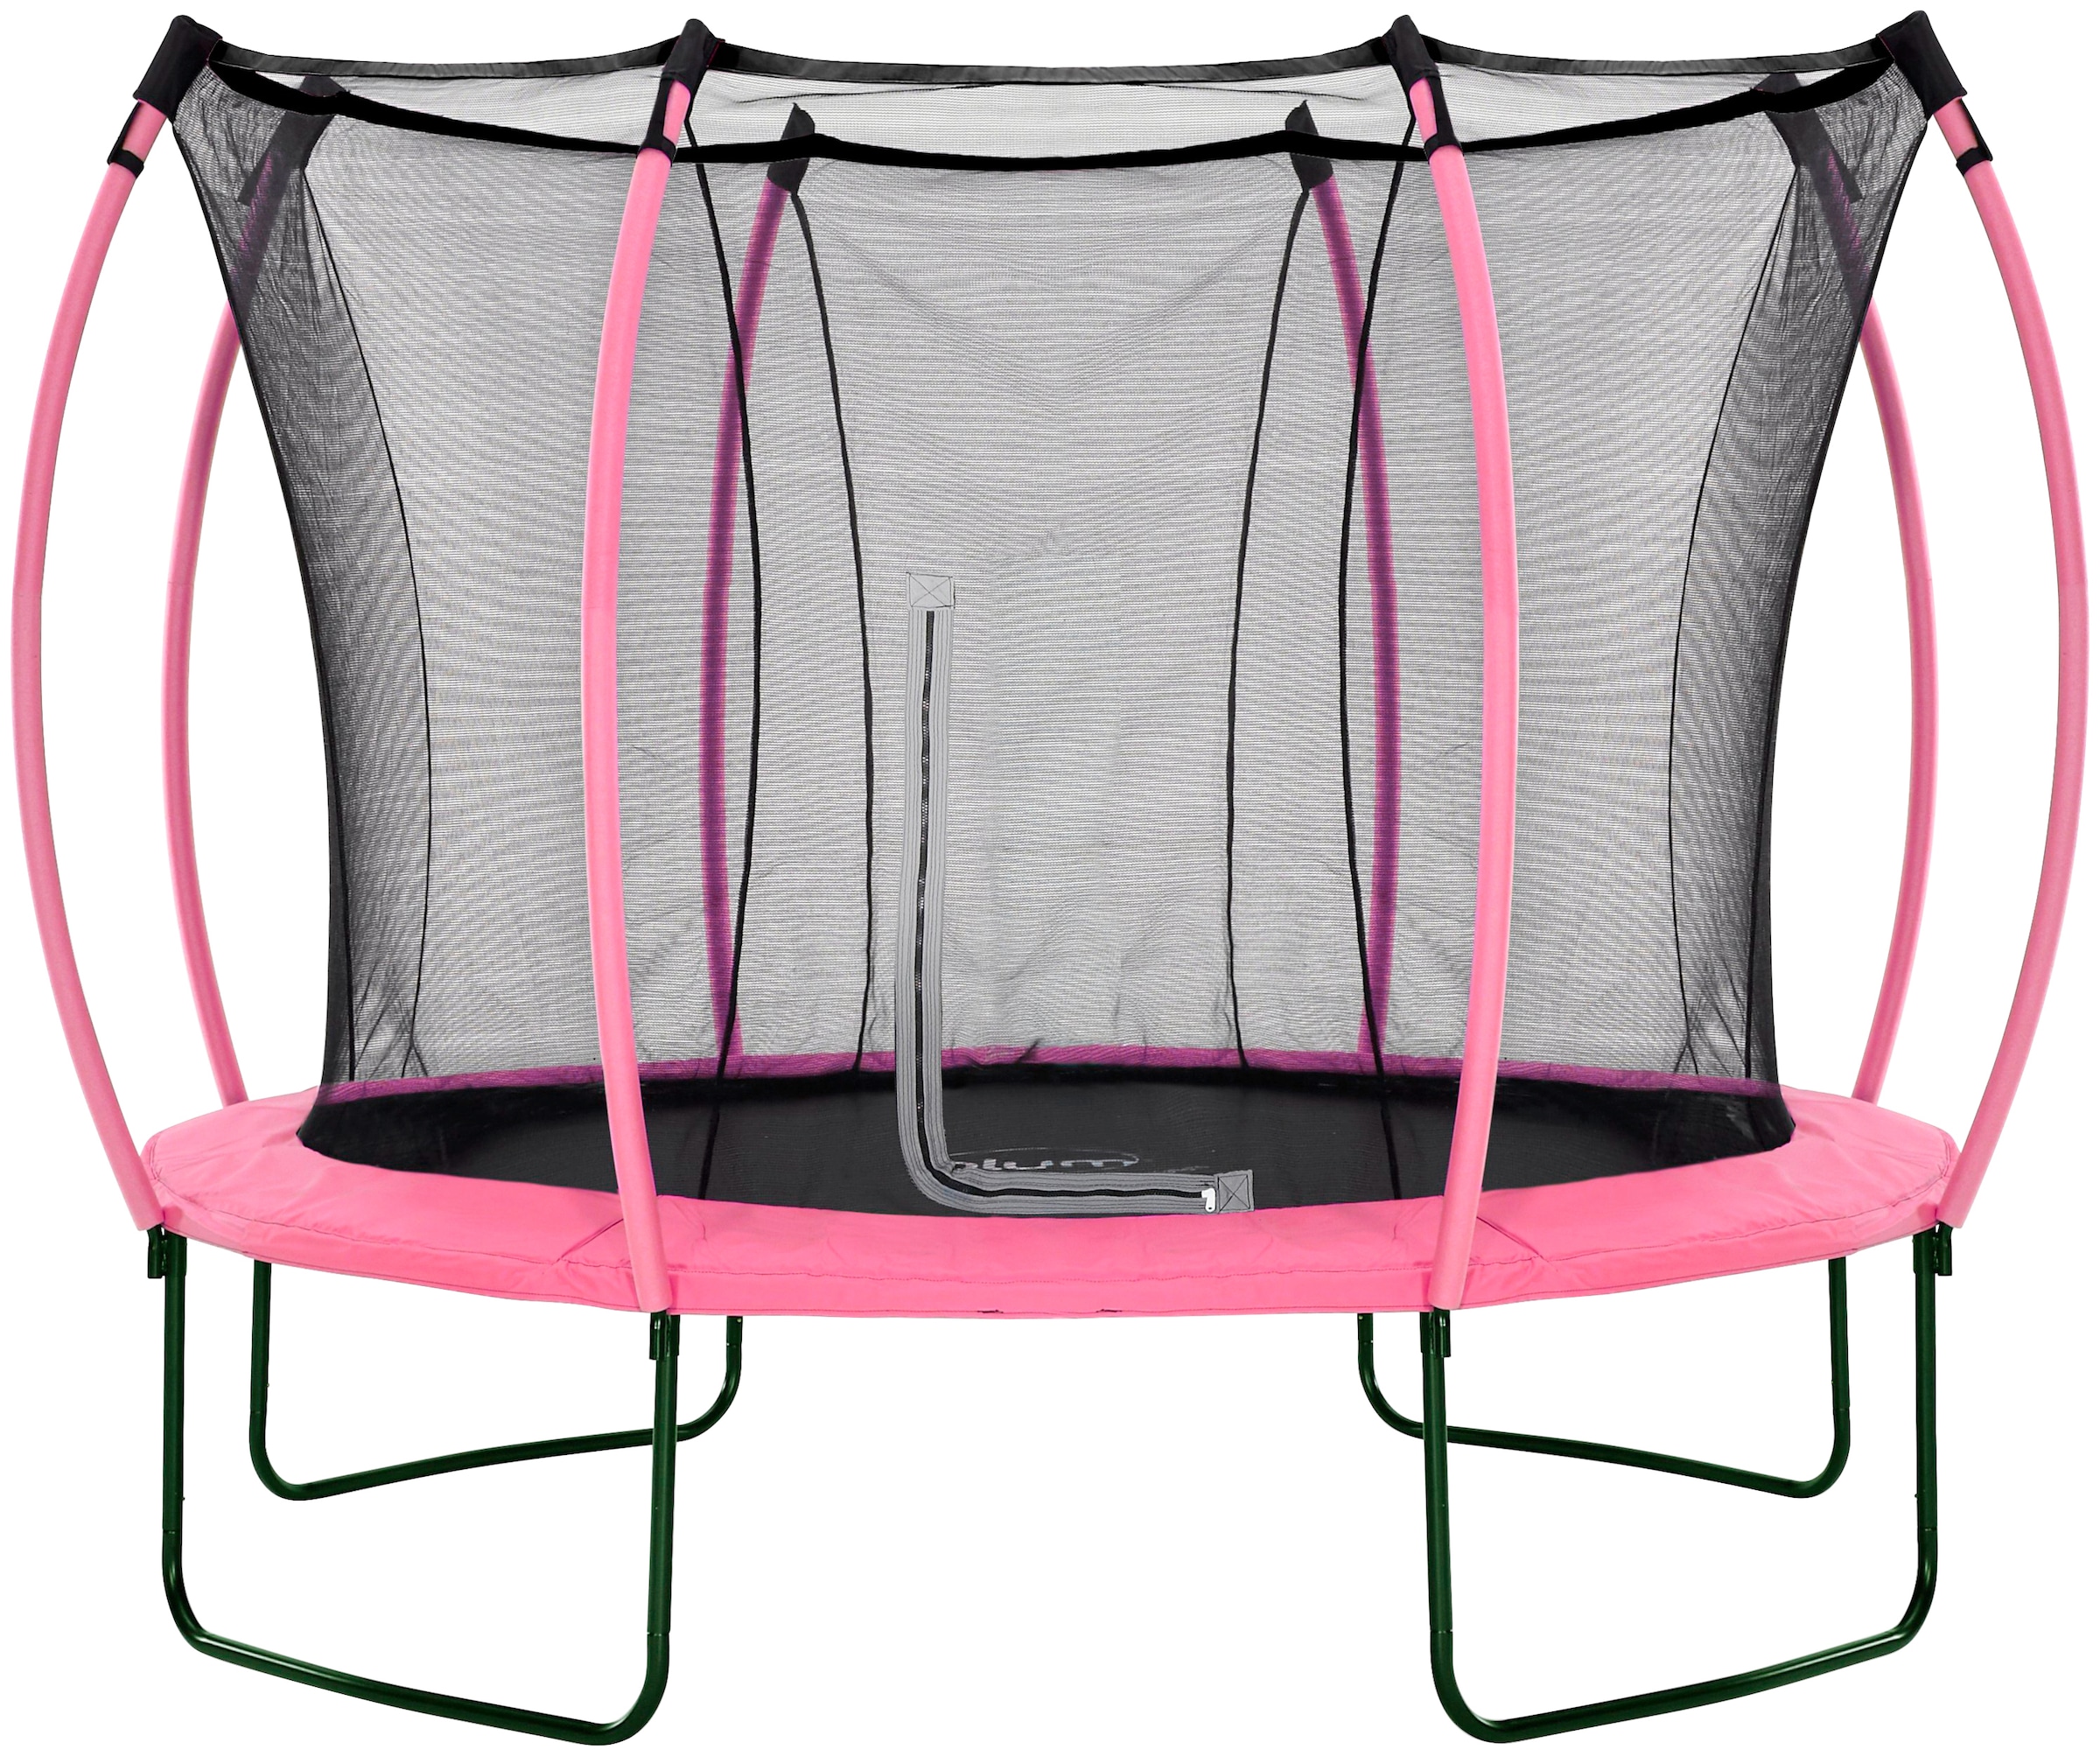 Gartentrampolin »Springsafe Colours«, 305 cm mit Sicherheitsnetz, pink